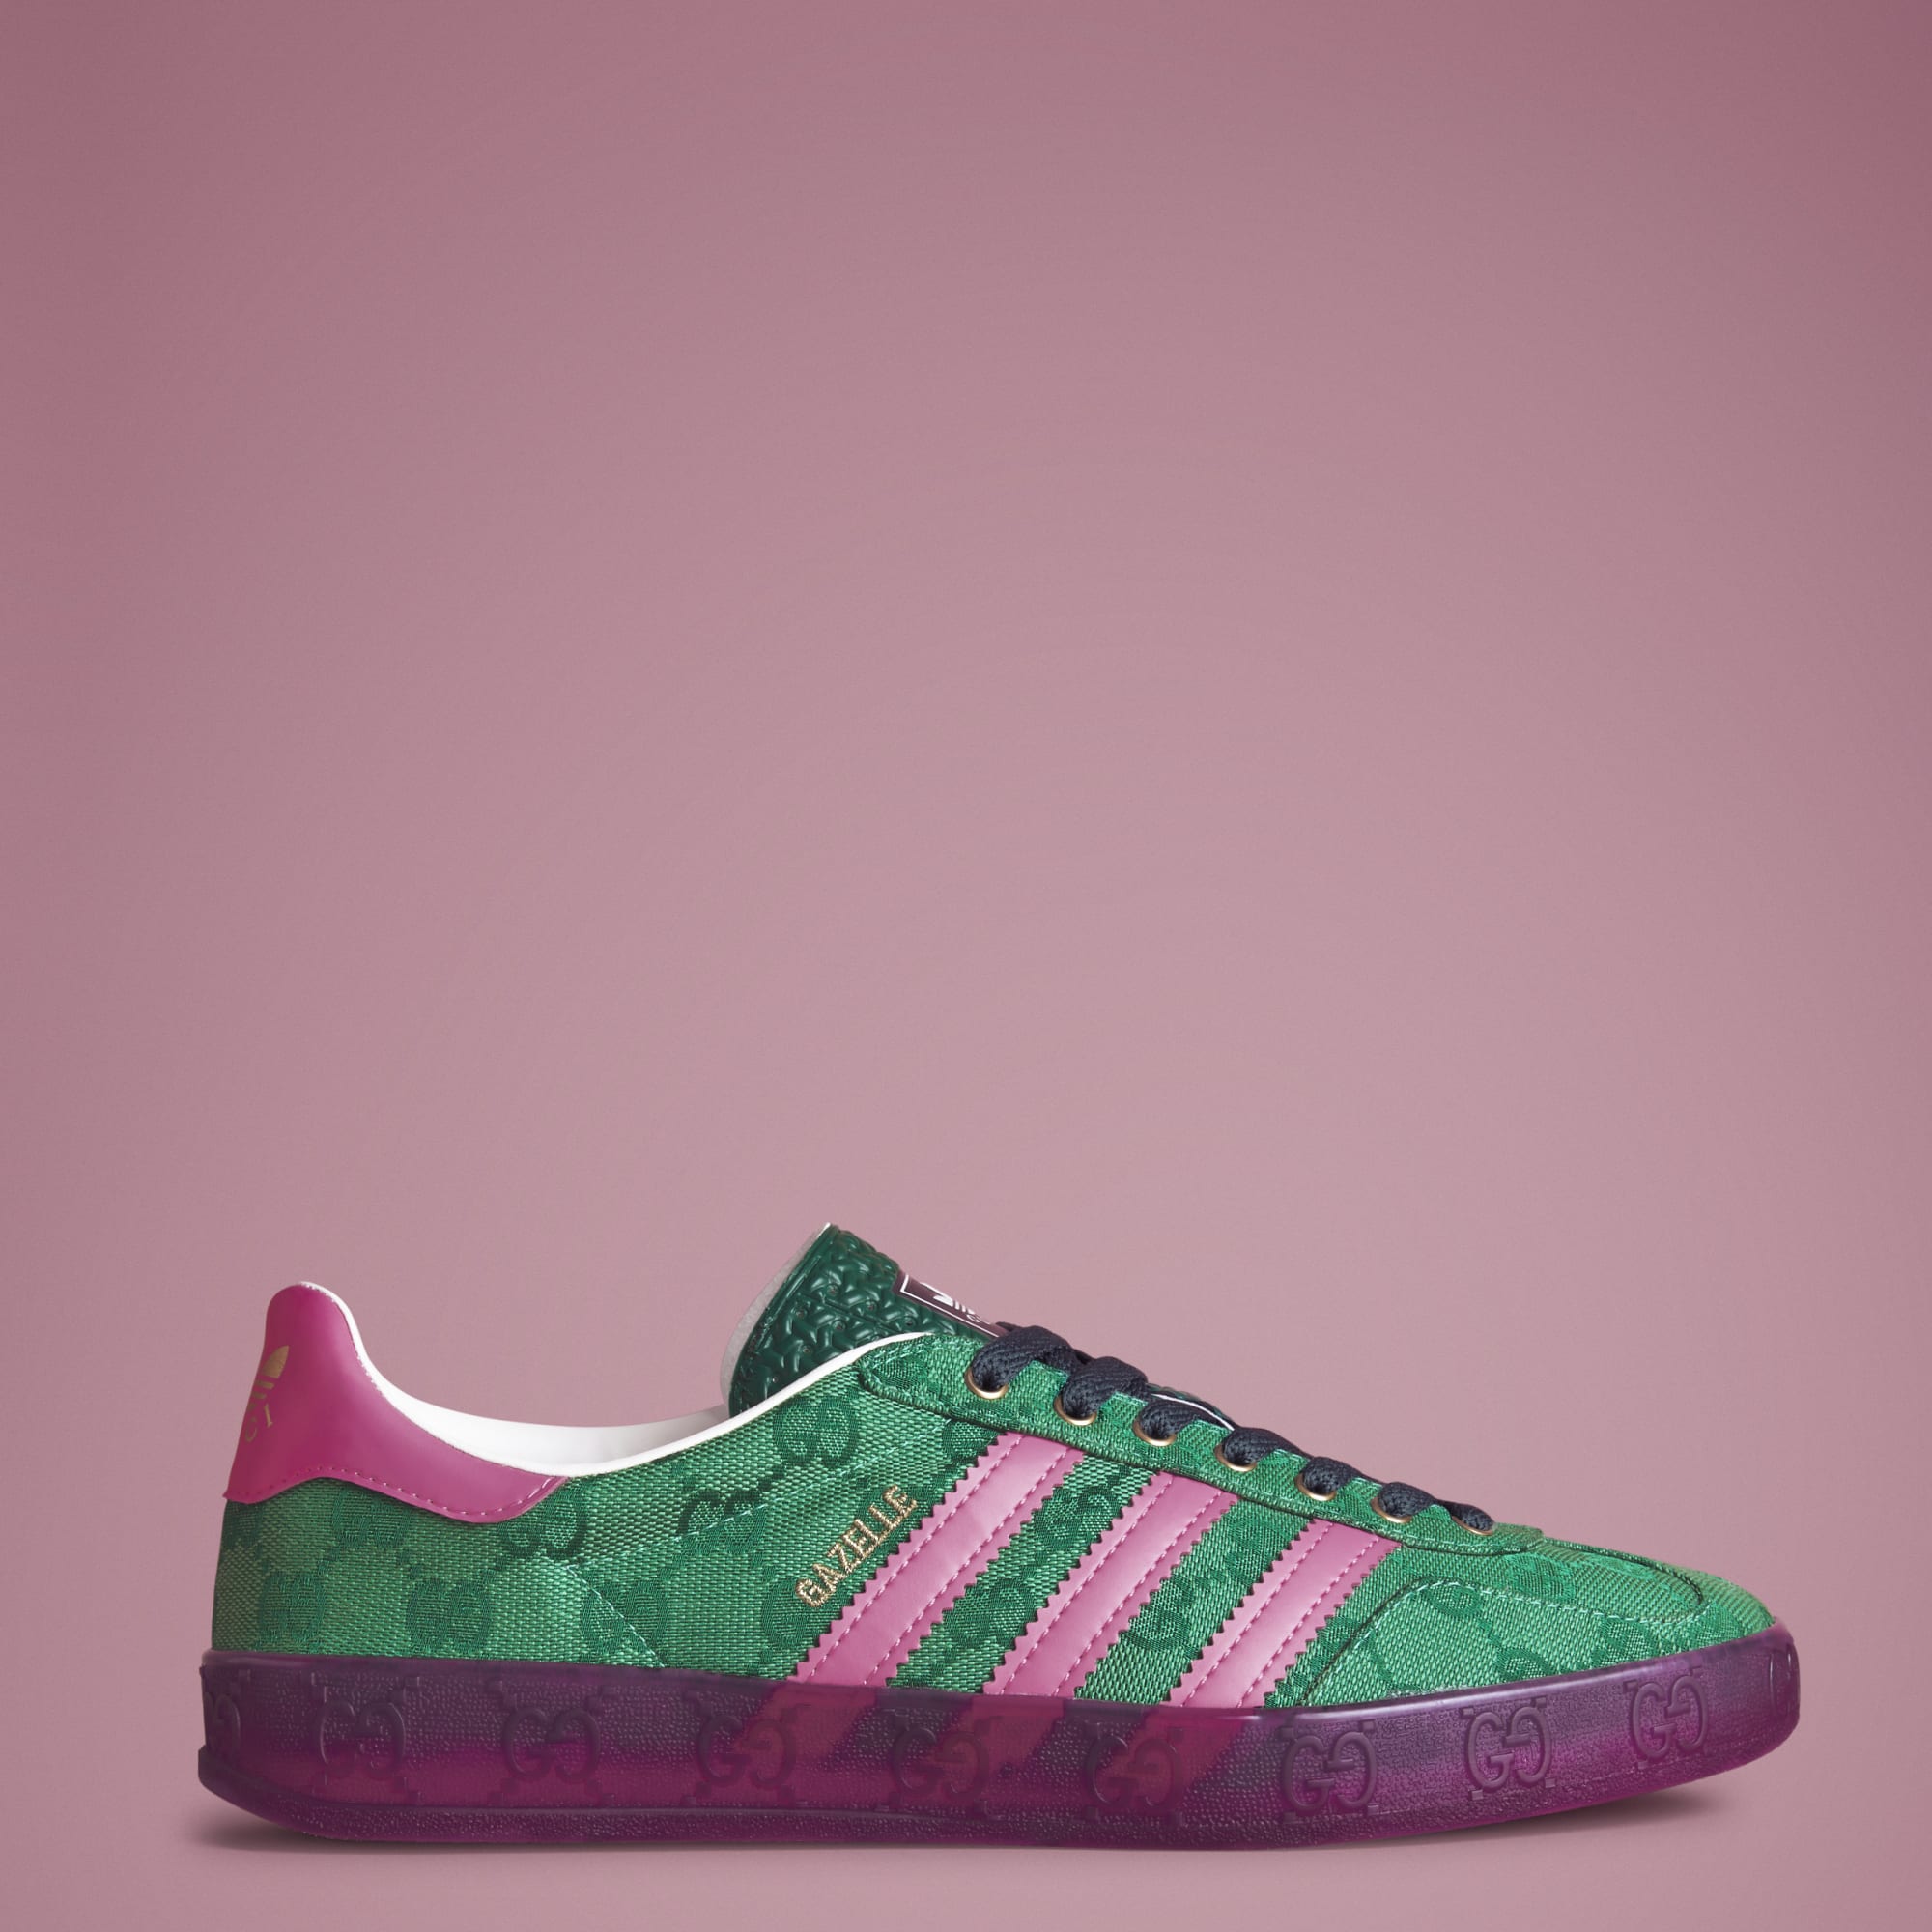 Adidas x Gucci Gazelle Green/Pink